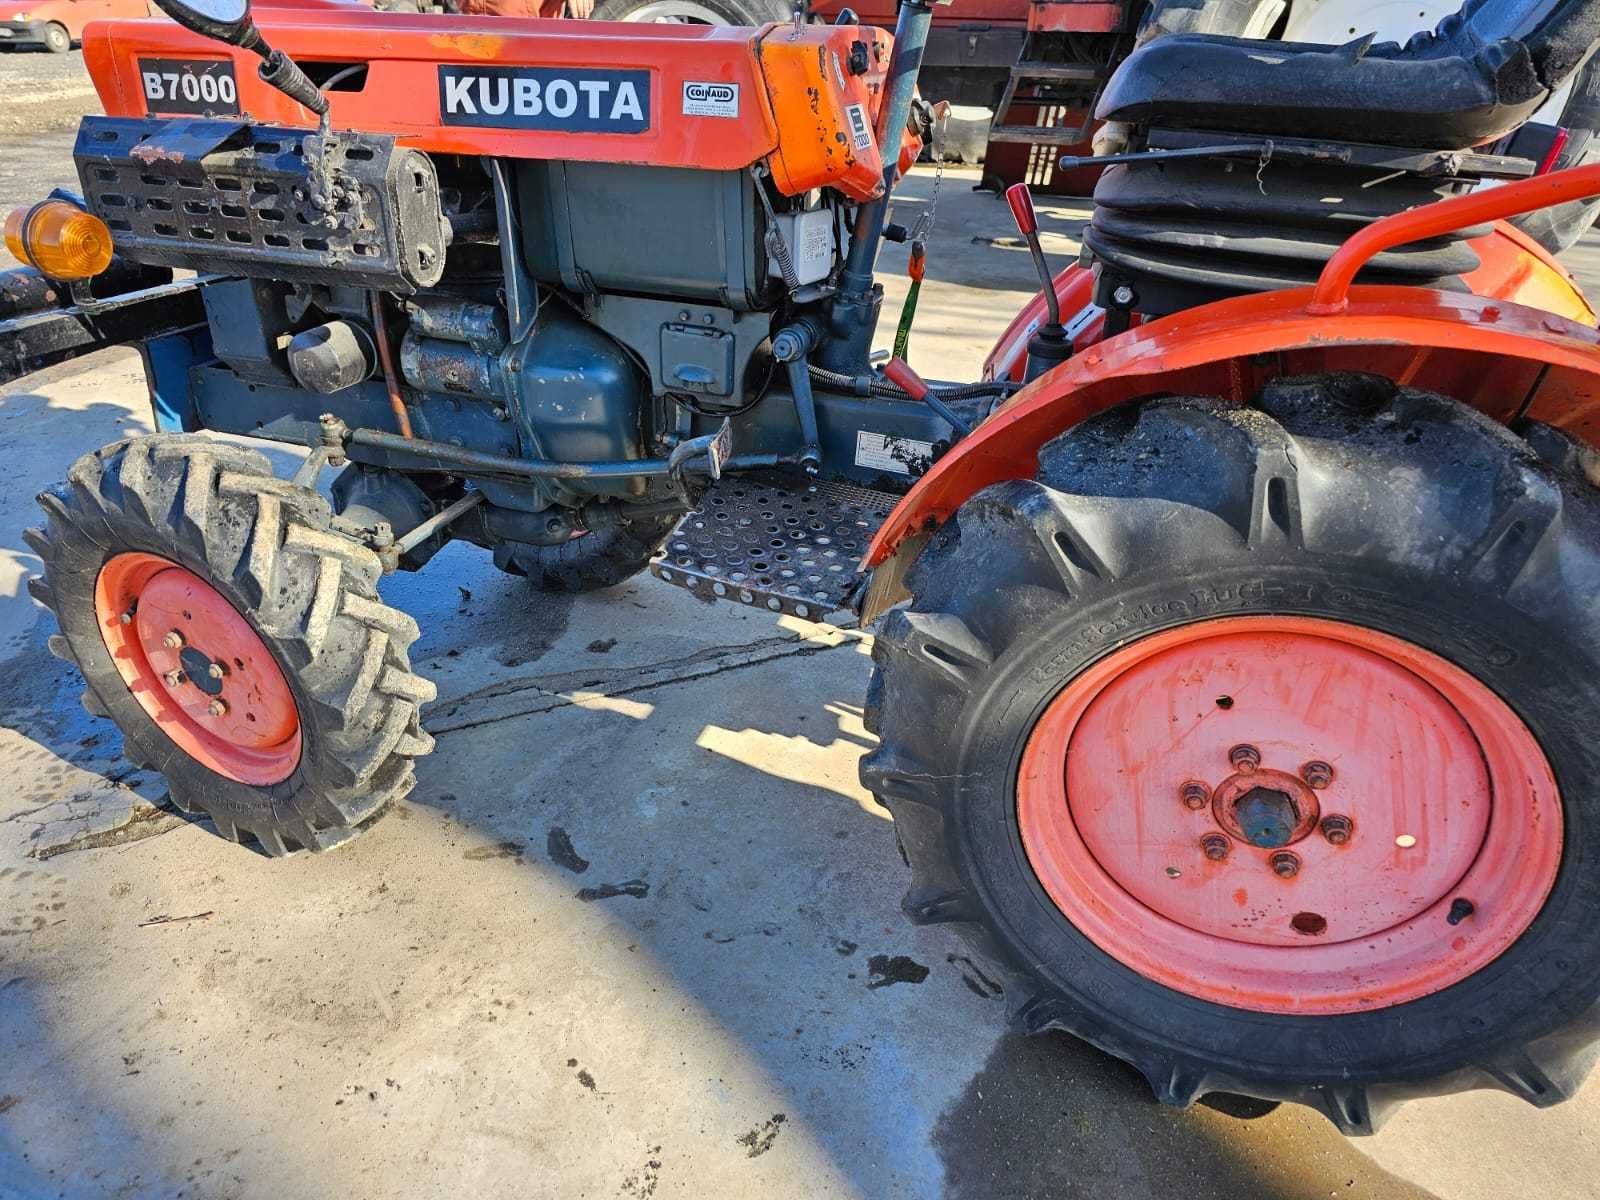 Traktorek Kubota B7000, brony i przyczepka. Lub zamiana na C-330